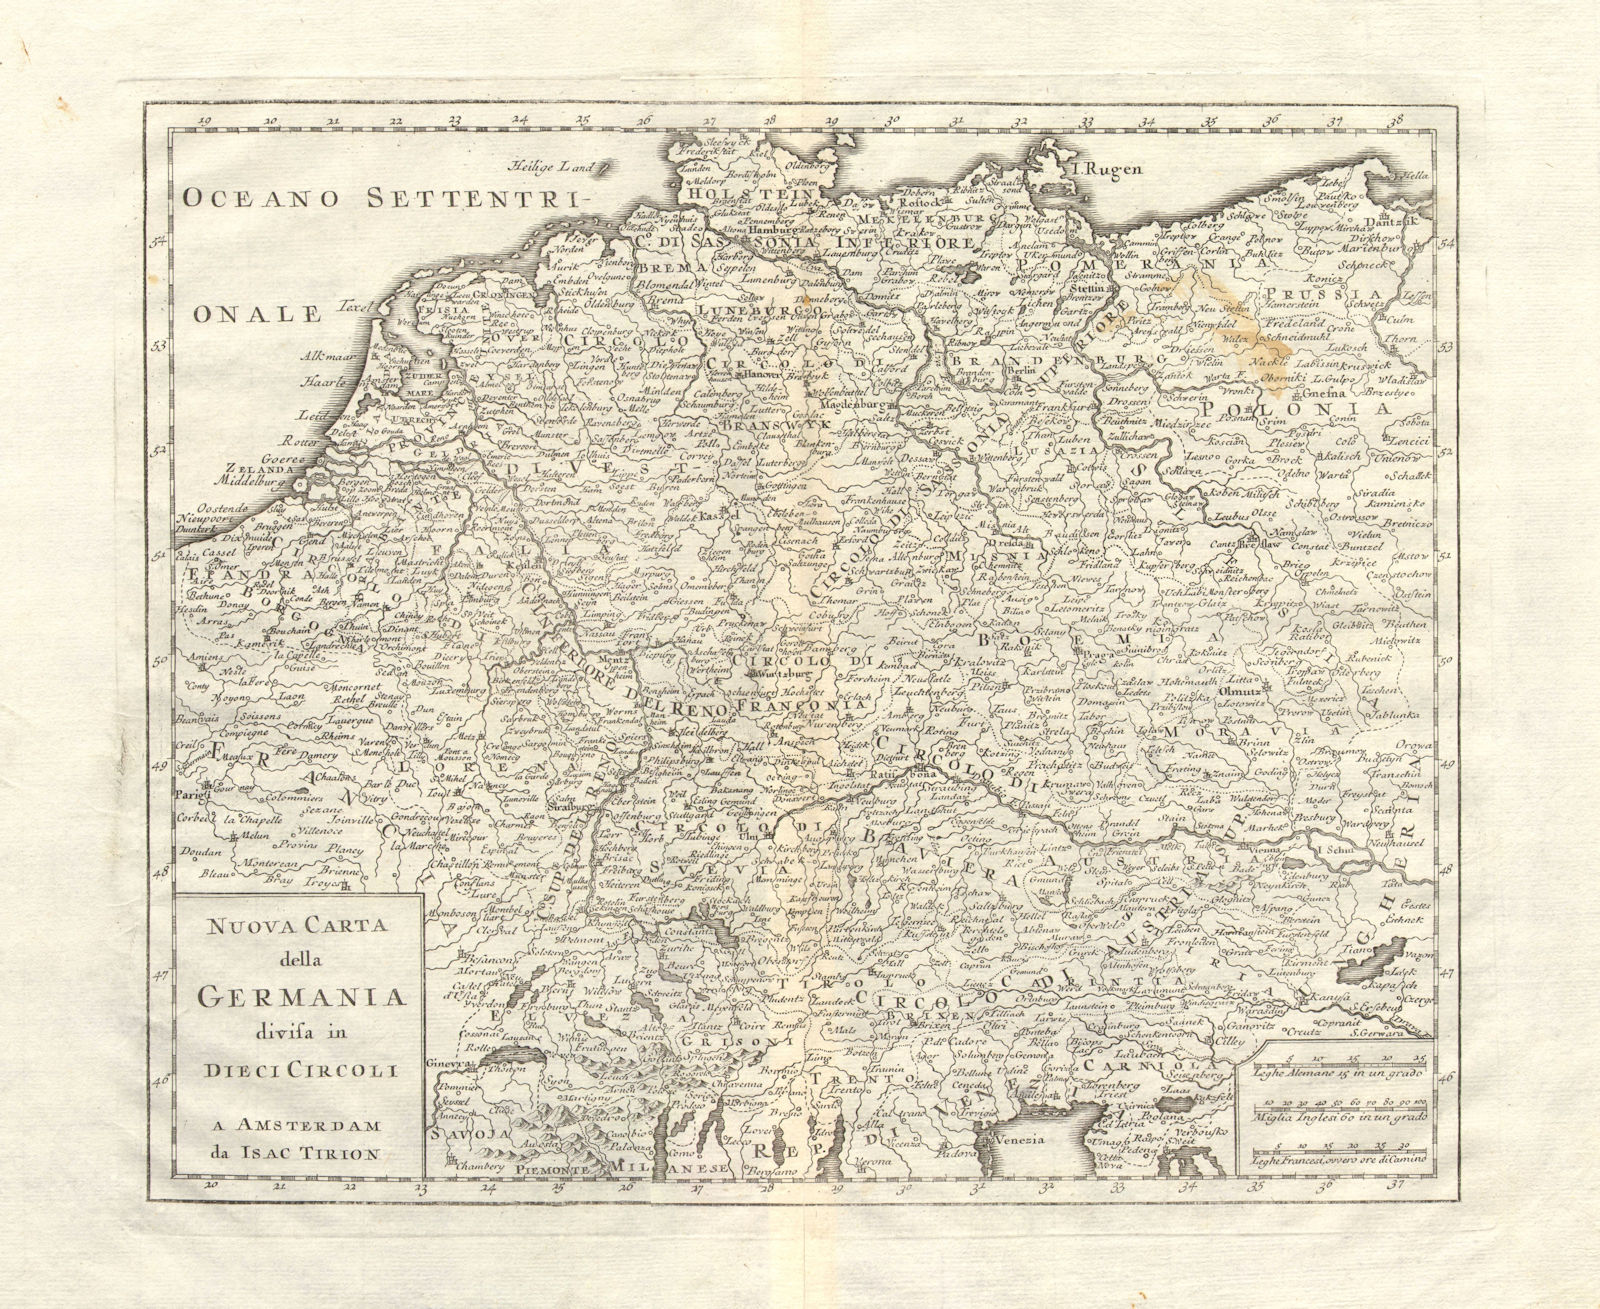 'Nuova Carta della Germania divisa in dieci circoli' by Isaak TIRION 1740 map